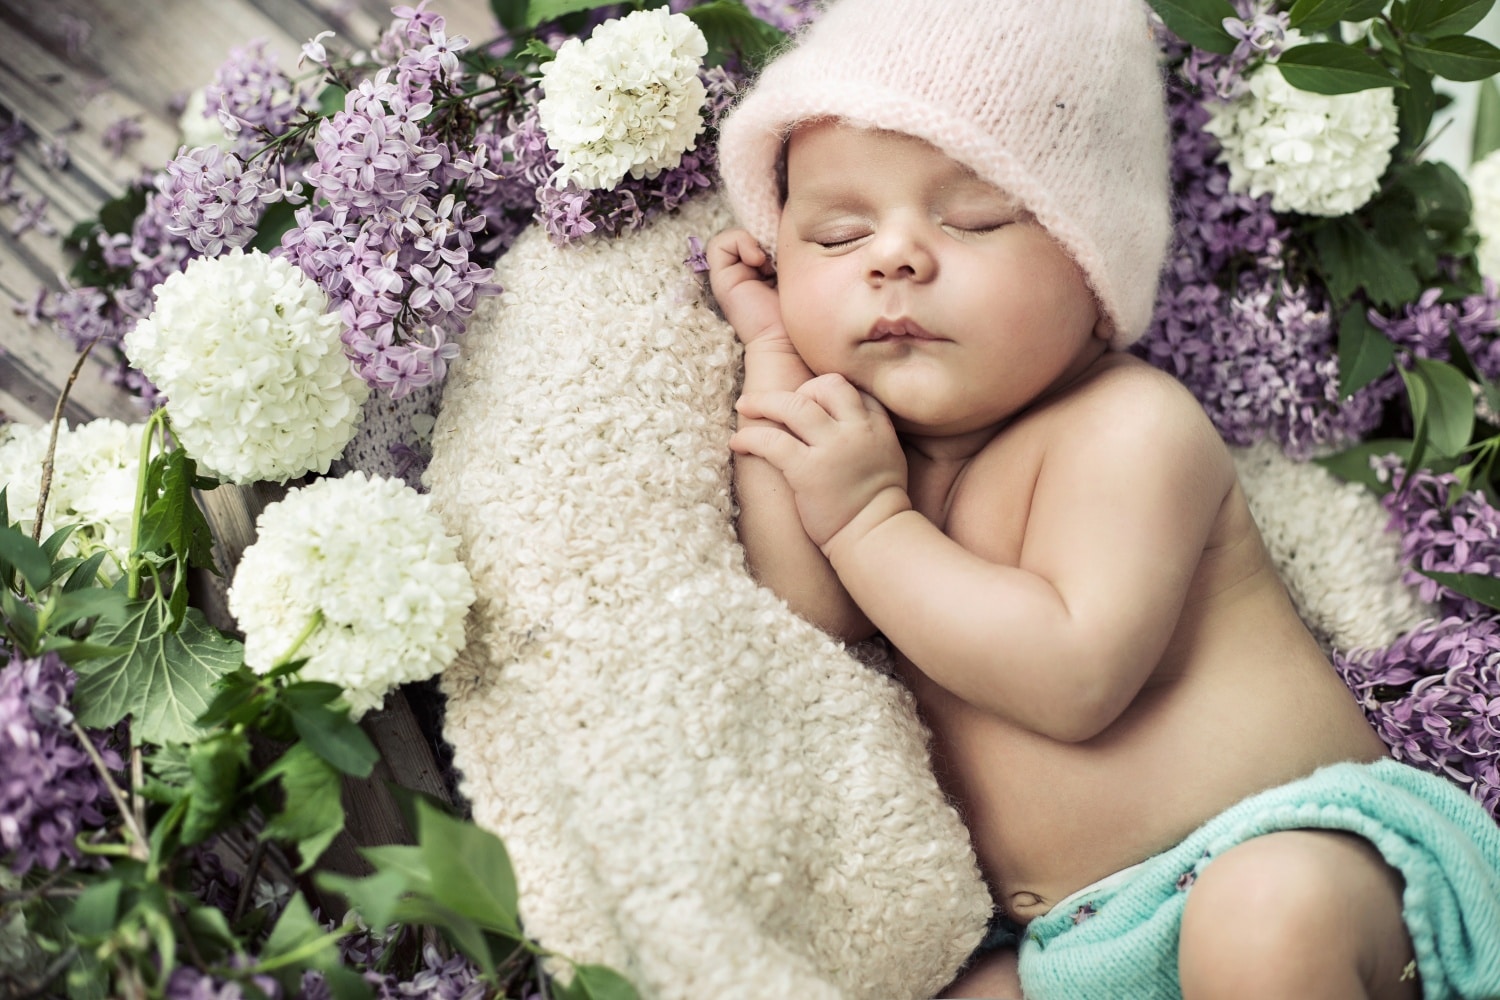 A 6 legszebb altatódal – Énekeld ezeket kisbabádnak lefekvés előtt